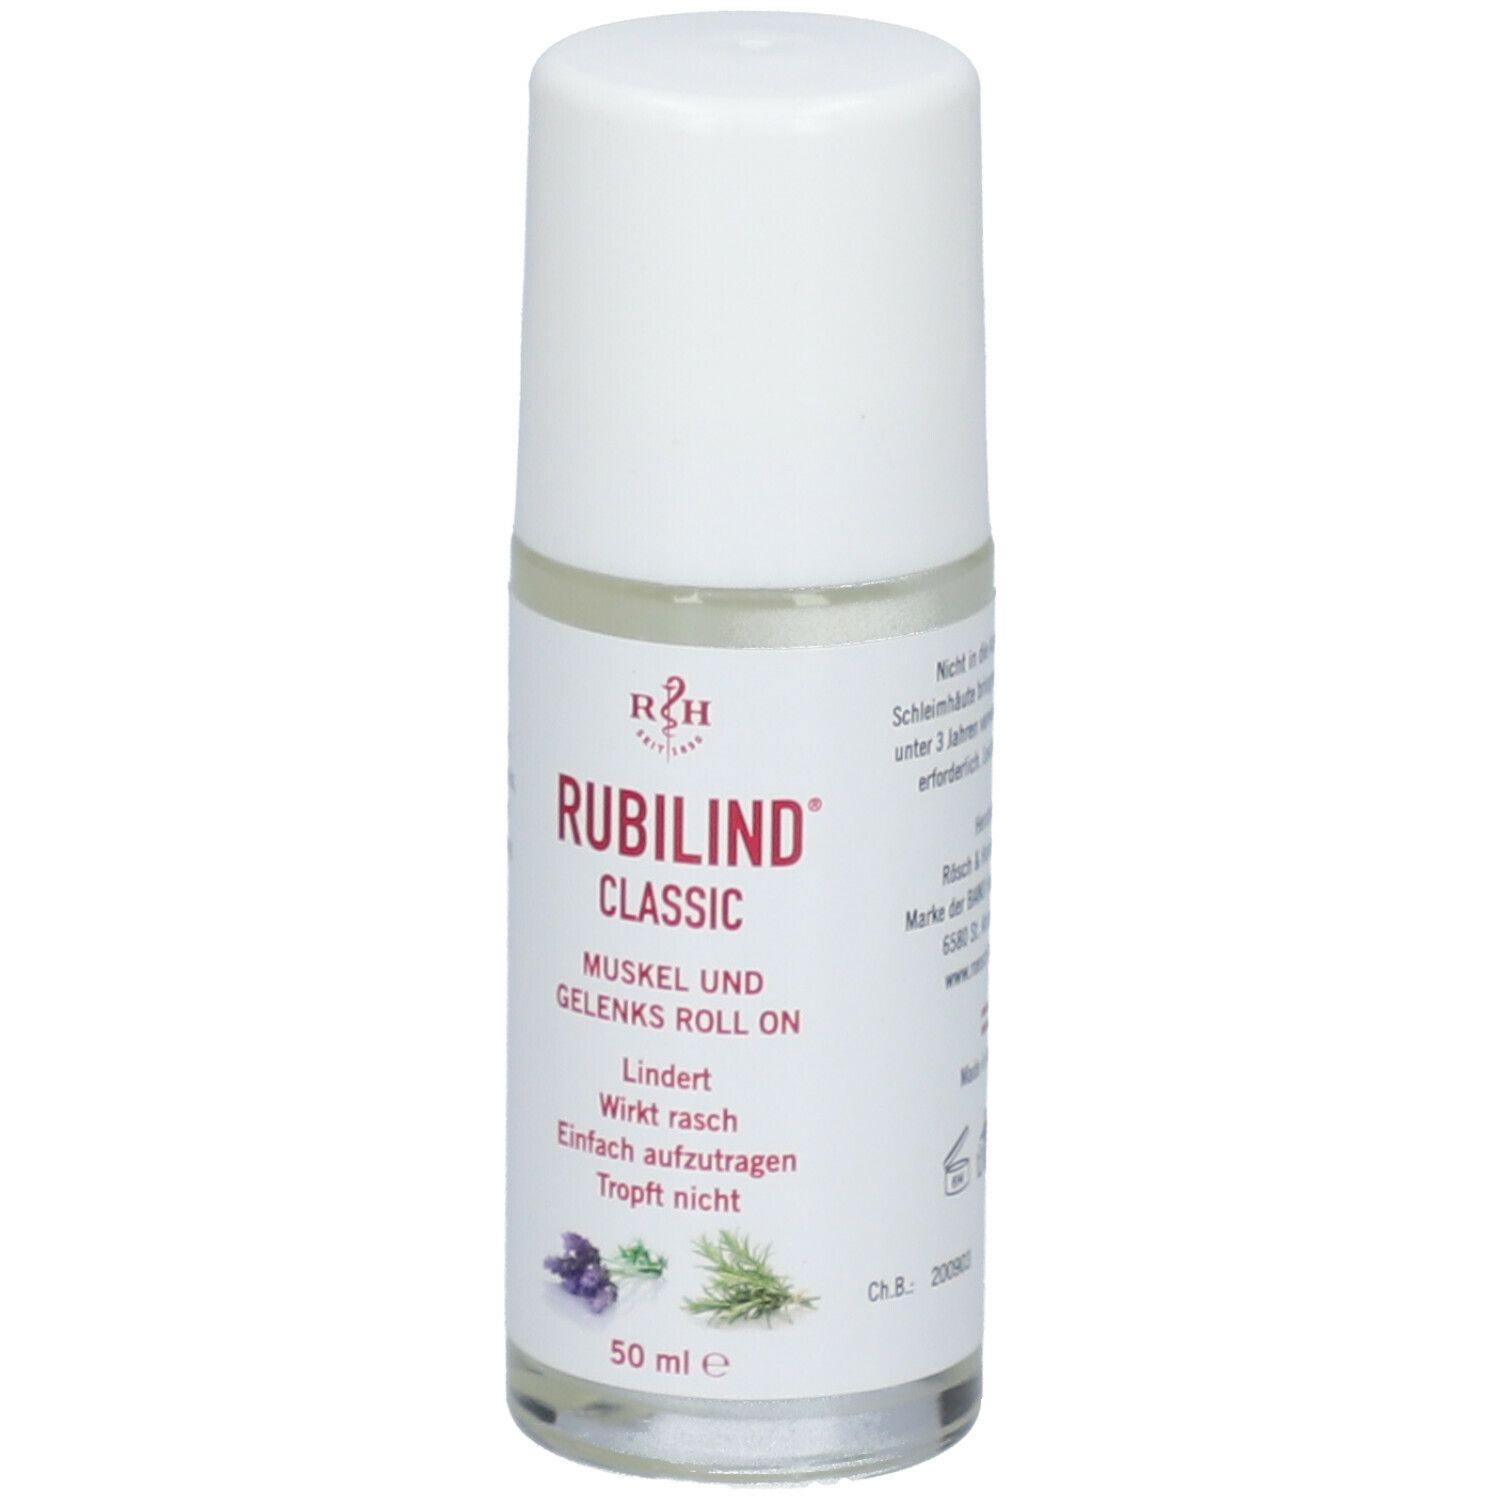 RUBILIND® CLASSIC